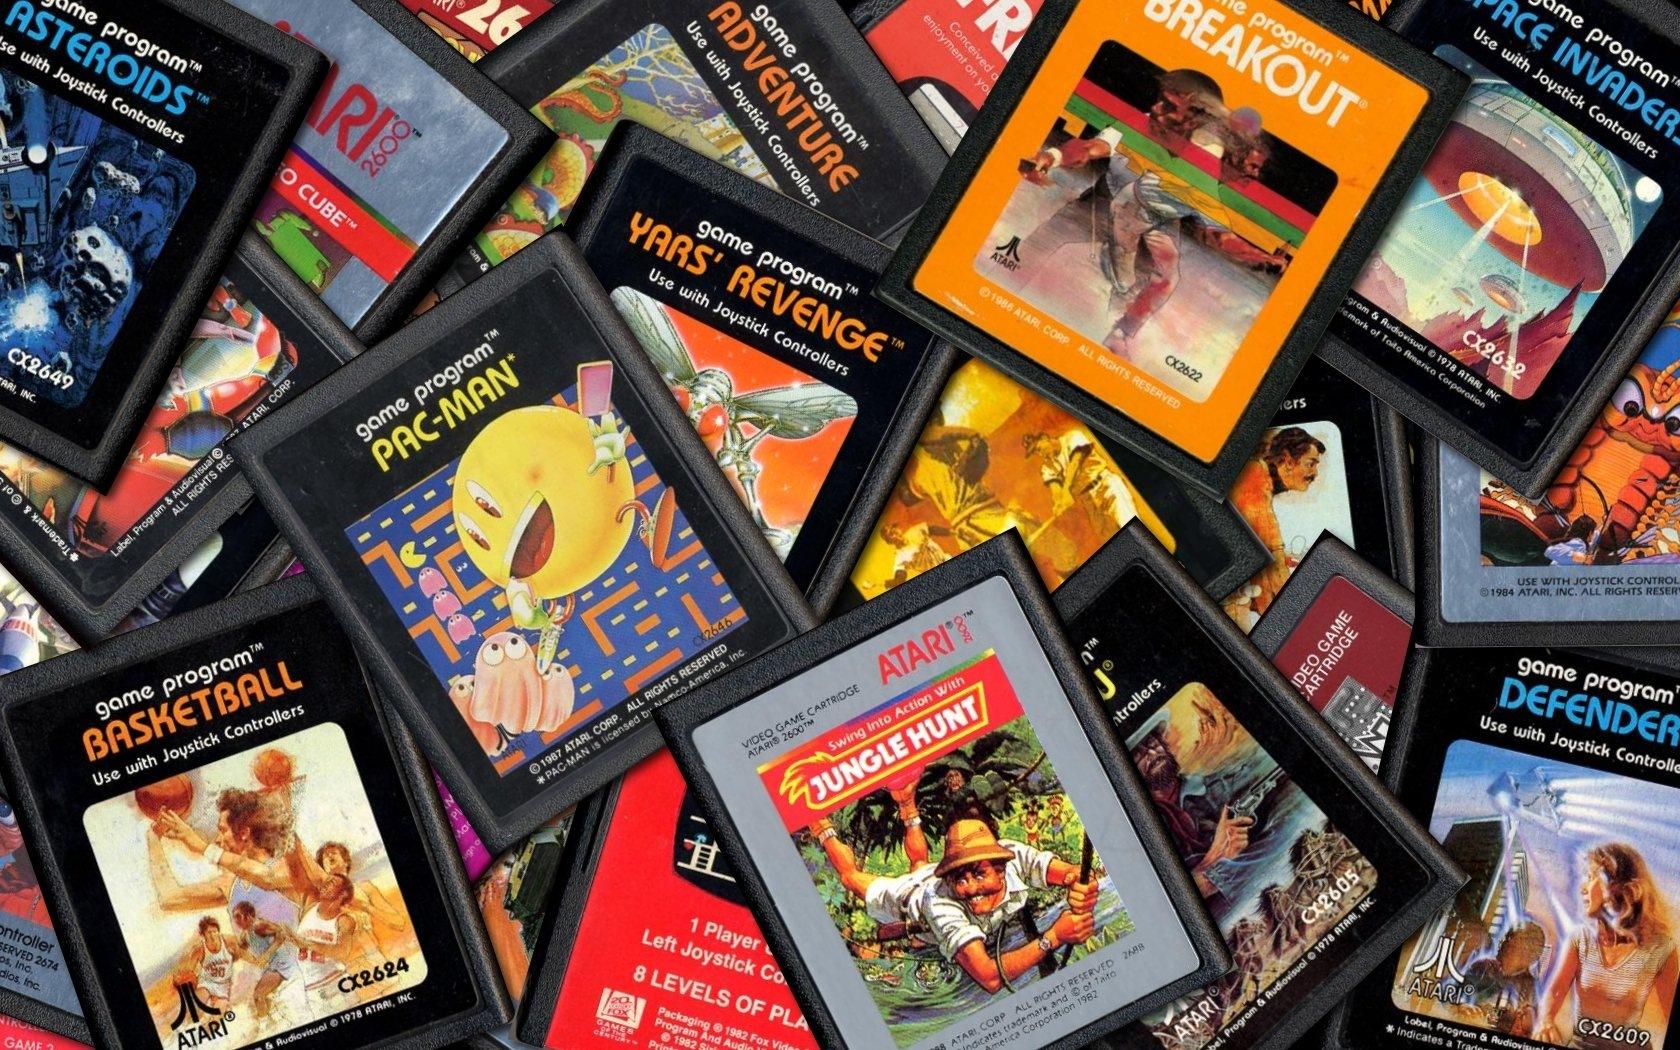 Coleções Etc Totalmente funcional Arcade Atari 2600 Console